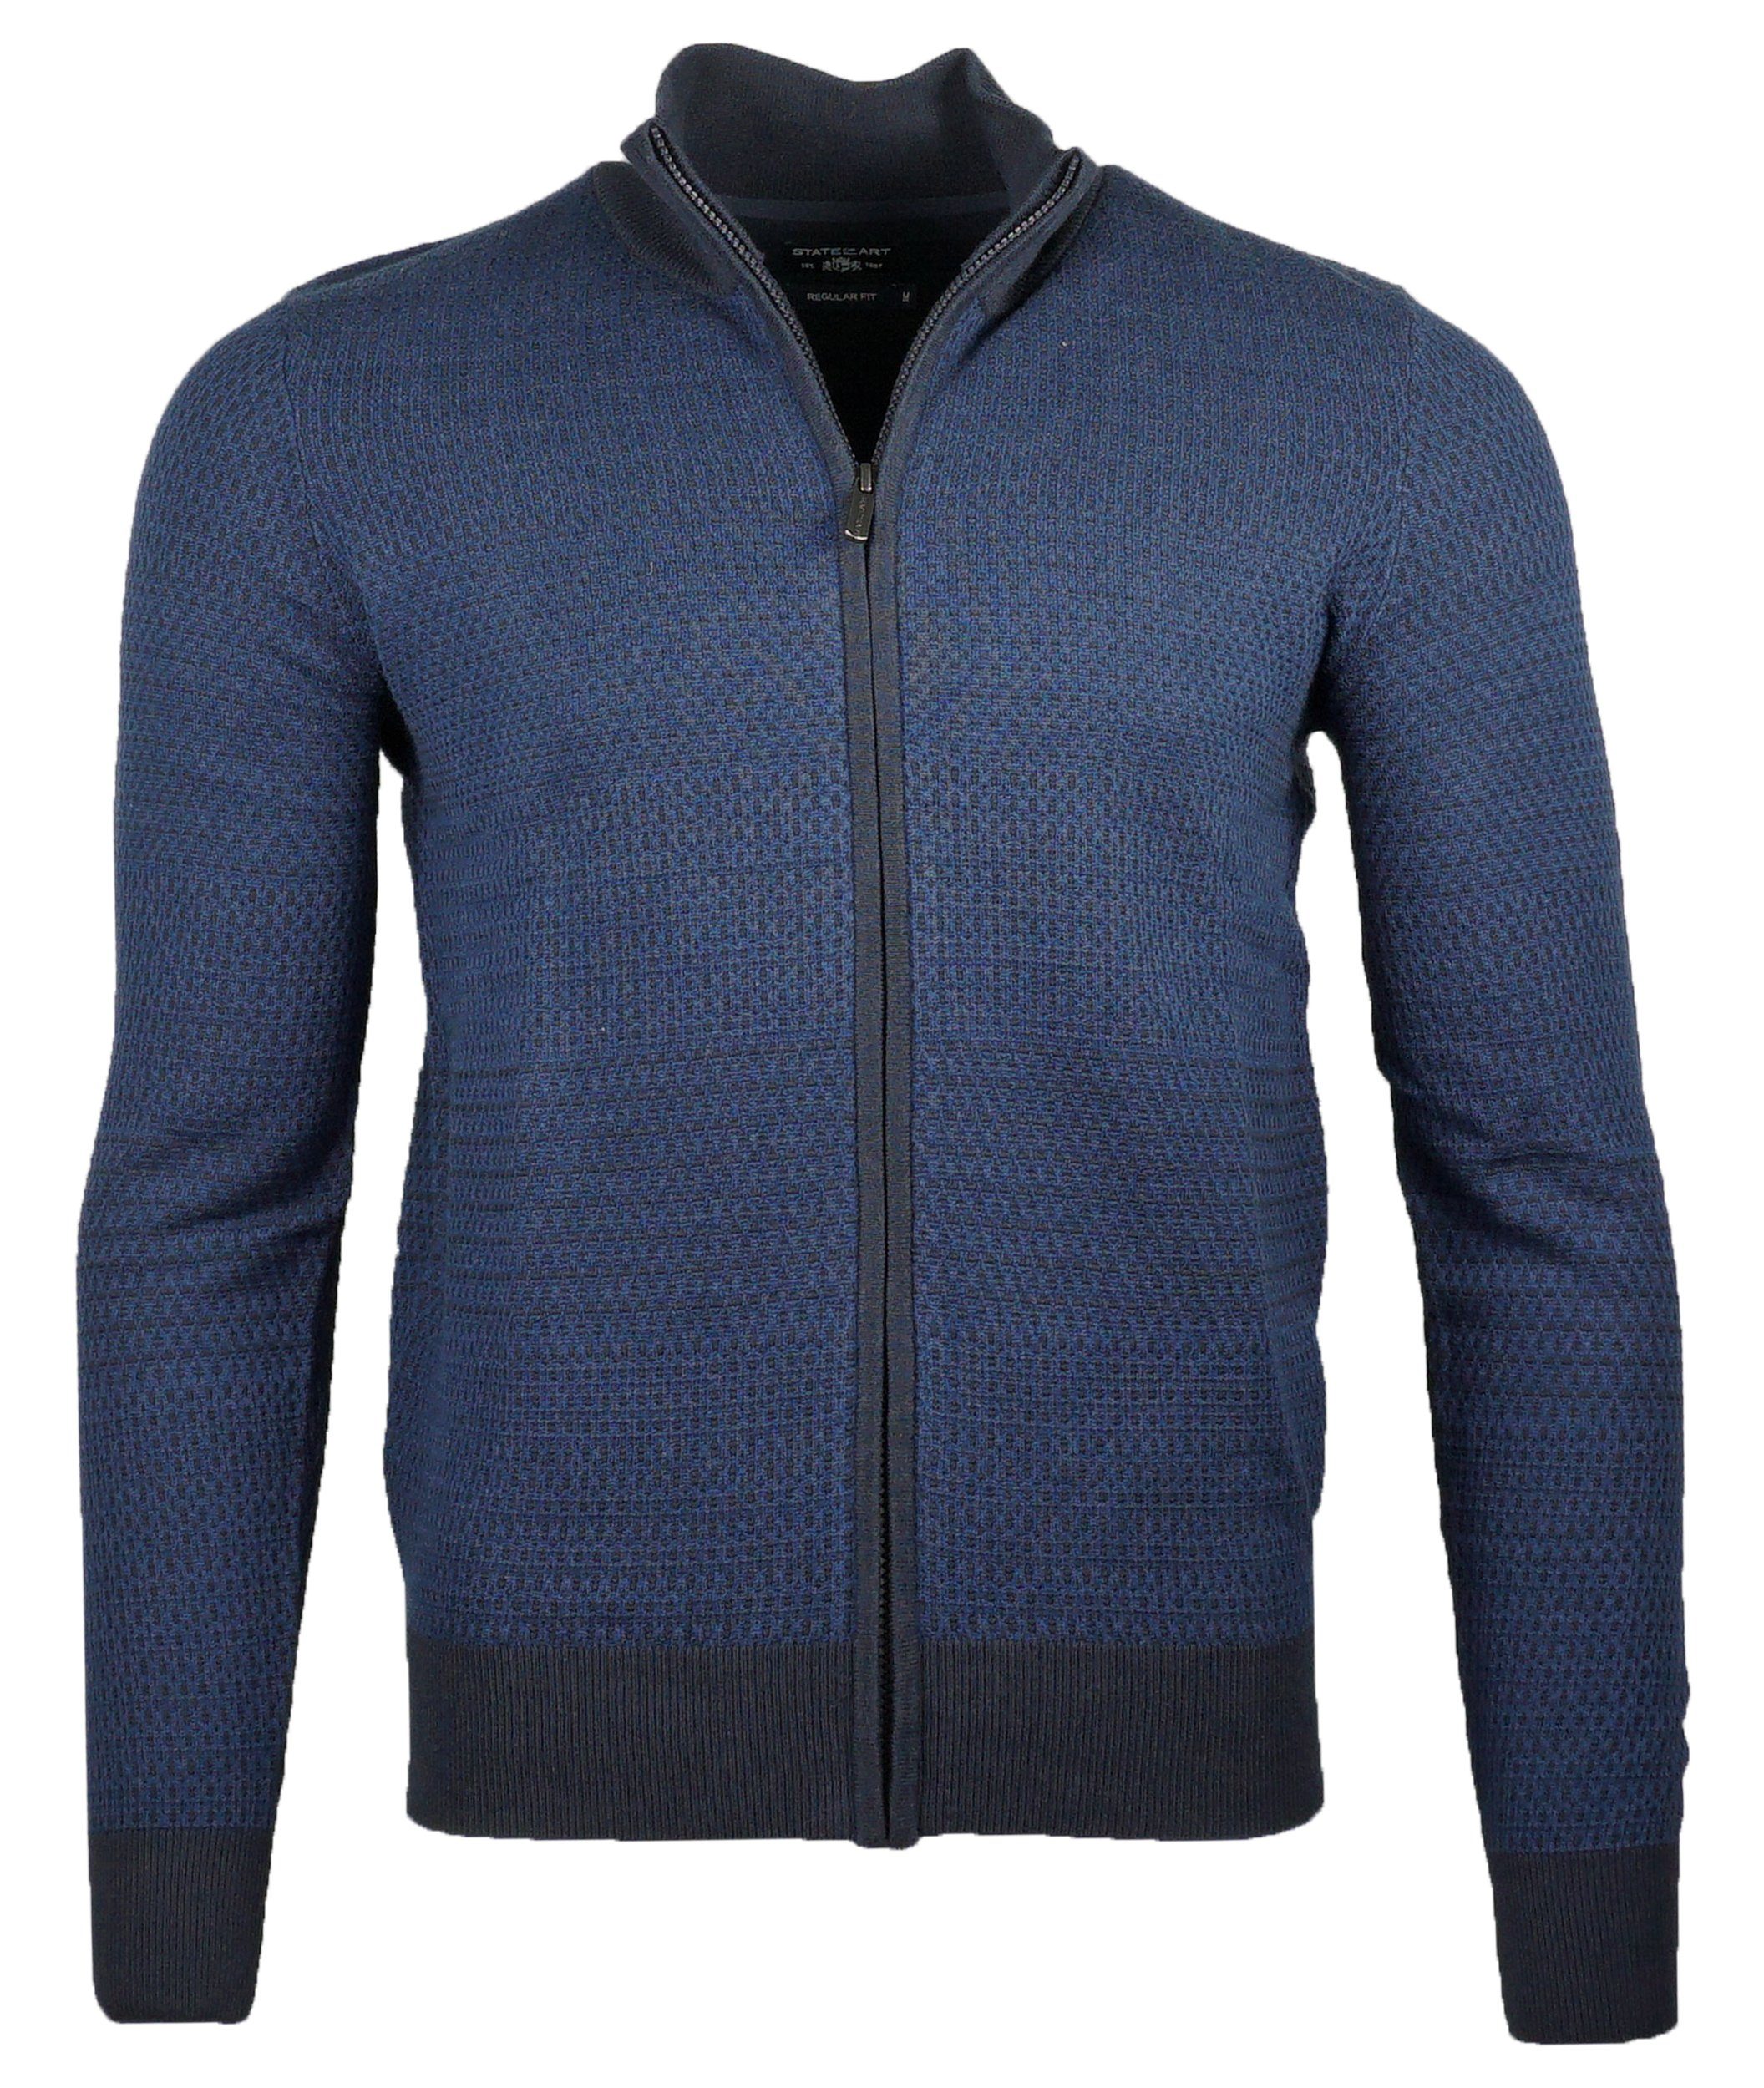 Baumwolle Strickjacke Strickjacke ART STATE knitwear Of Zipper Cardigan Art State Herren Blau of